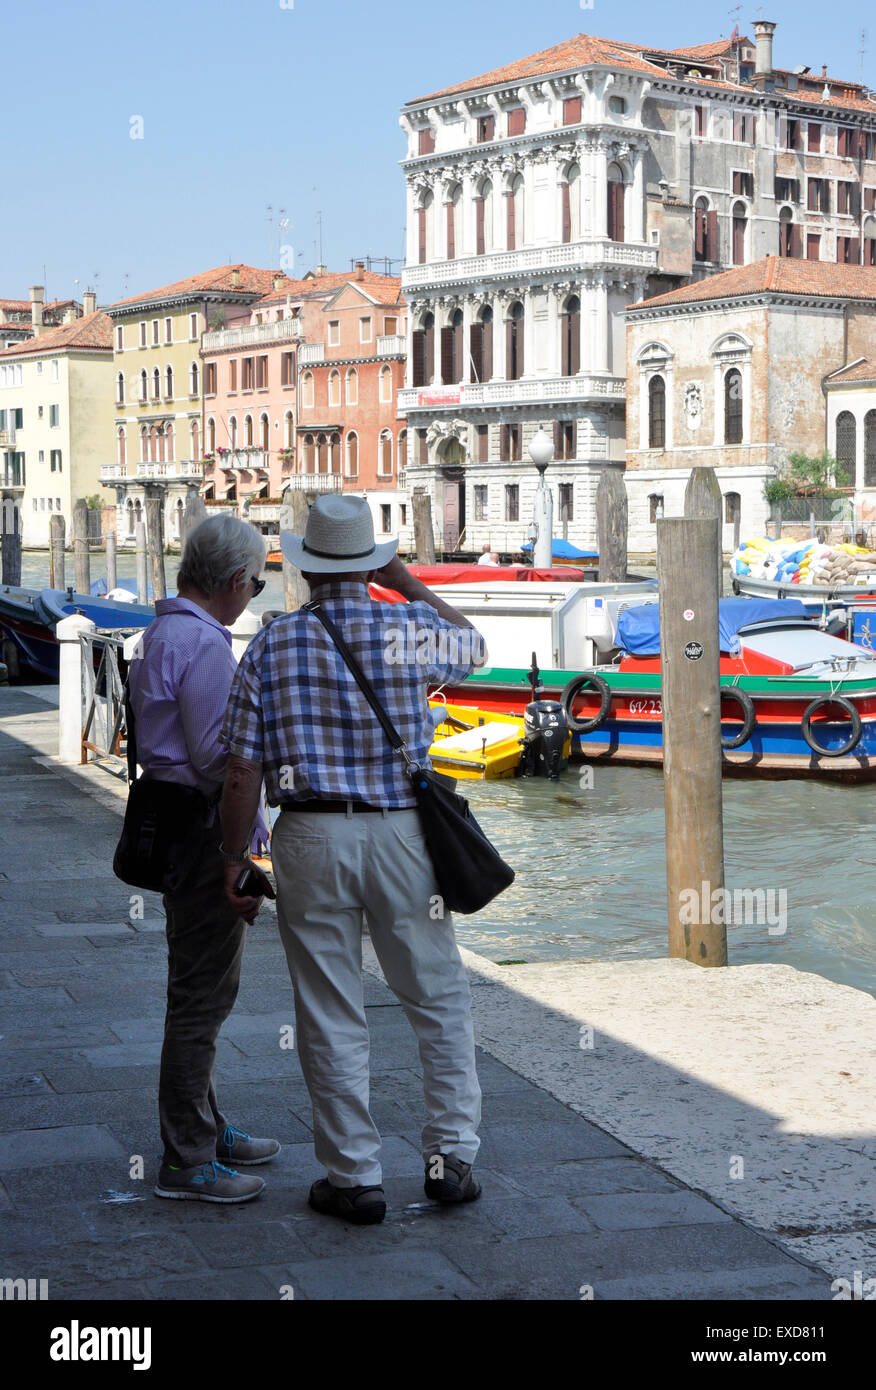 Italie Venise Grand Canal Santa Croce - couple de touristes plus SanGerema la route en face de Contrôle  + soleil ciel bleu Banque D'Images